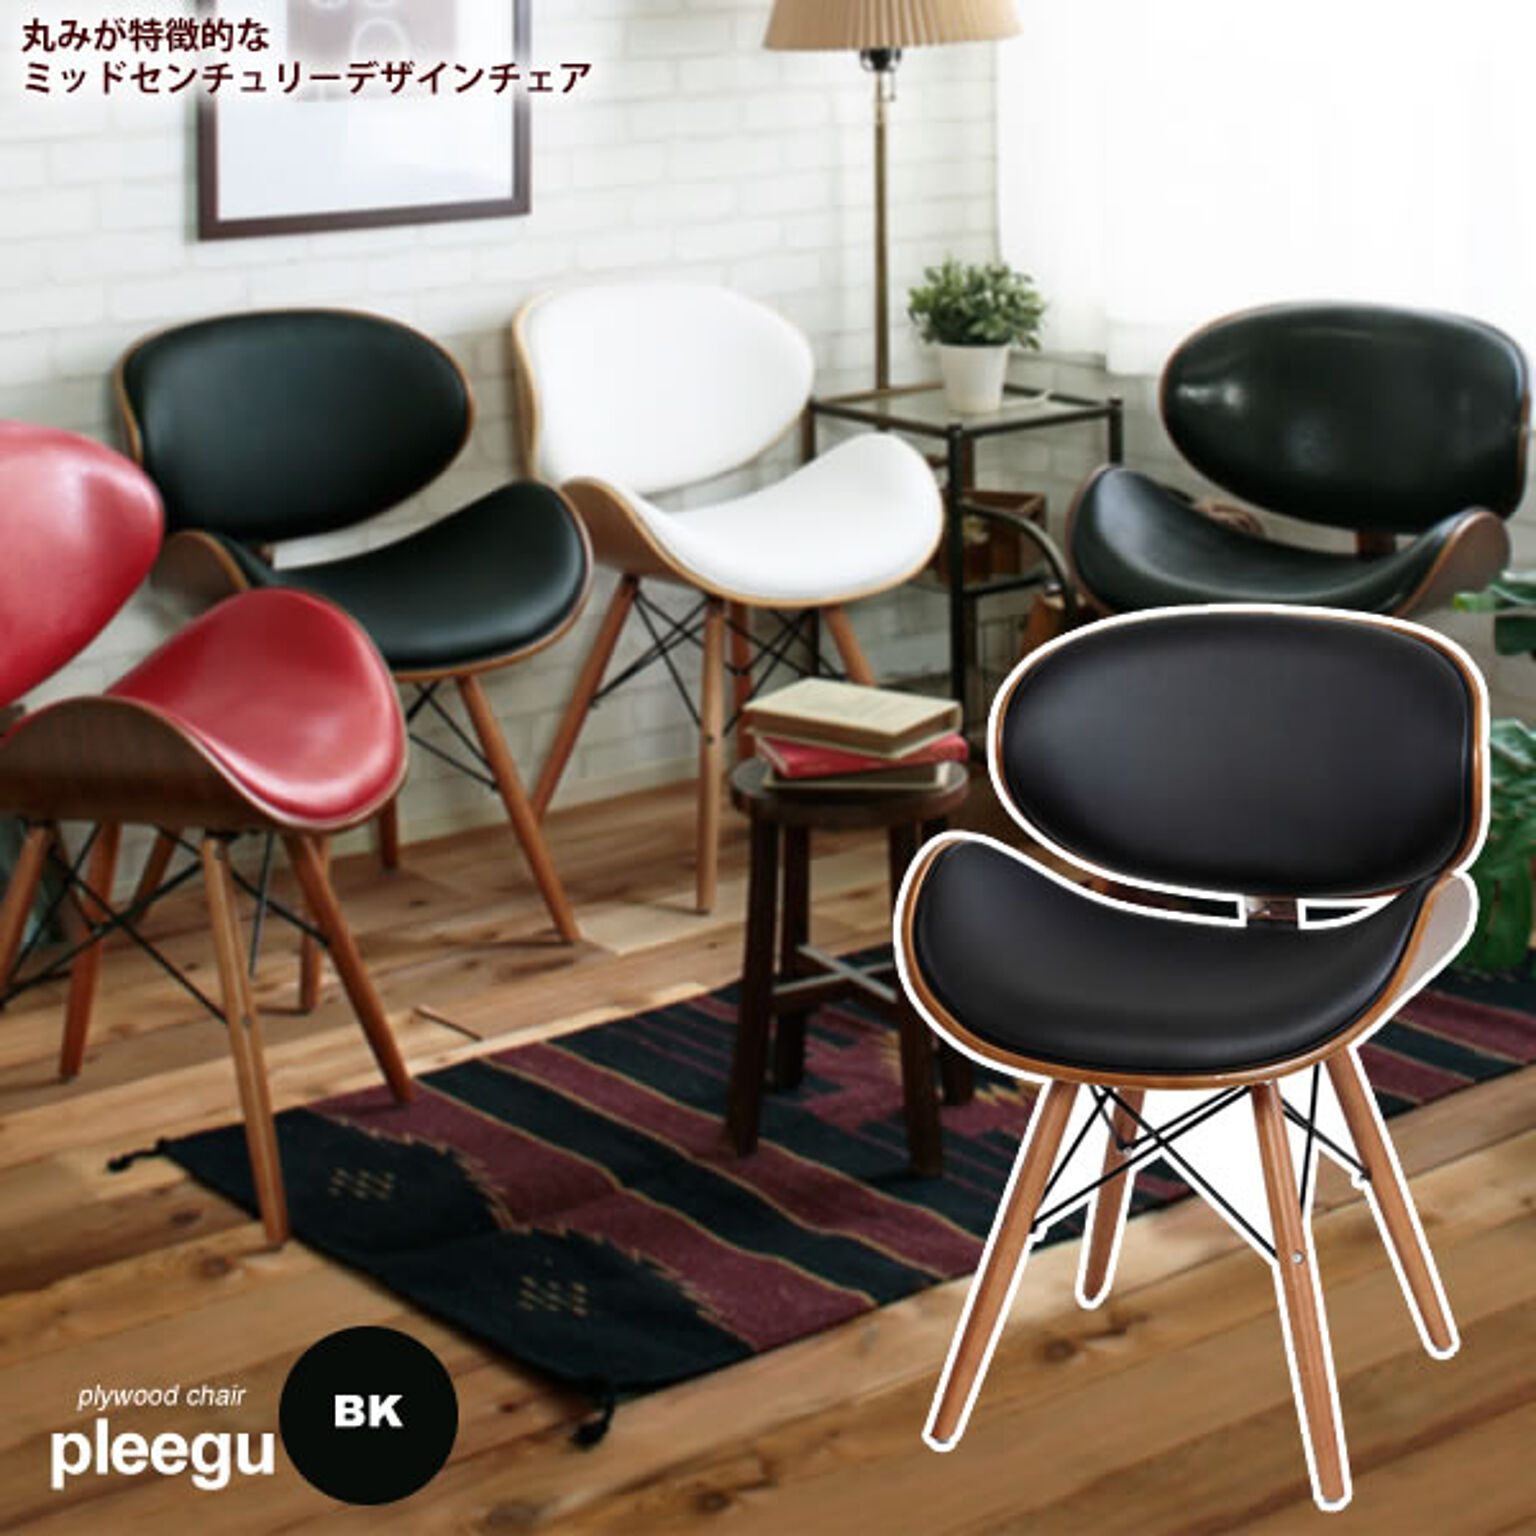 ダイニングチェア 椅子 イス いす ワークチェア デスクチェアー ： ブラック【pleegu】 ブラック(black) (ナチュラル) ミッドセンチュリー プライウッド 